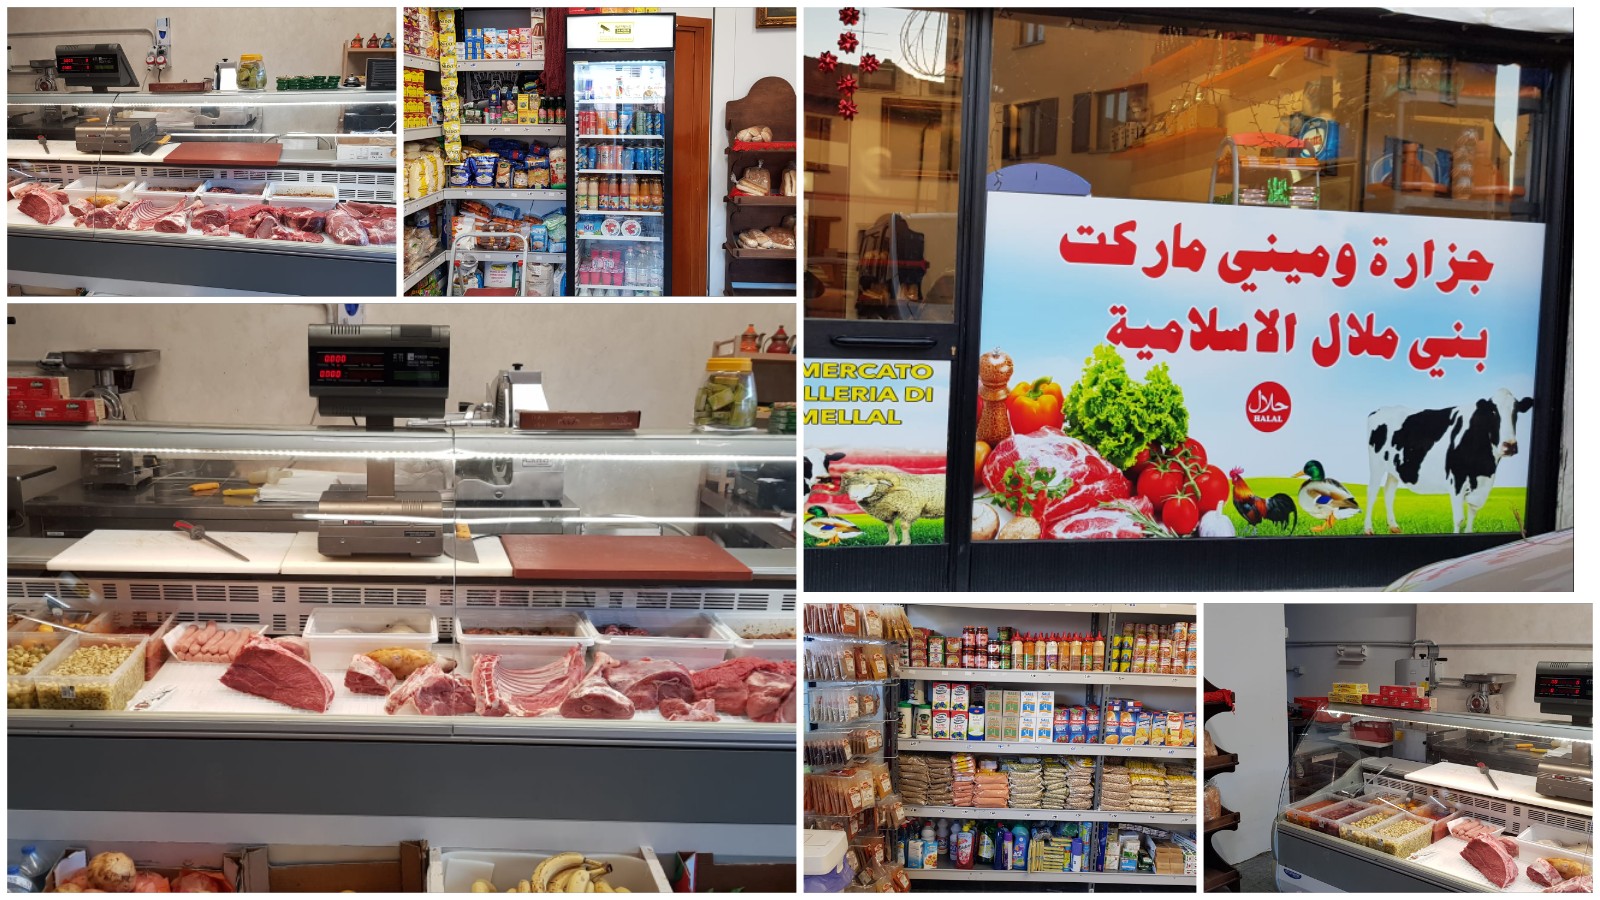 بالتوفيق… مهاجر ابن بني ملال يفتتح محلا بإيطاليا لبيع اللحوم الحلال والمواد الغذائية (صور)